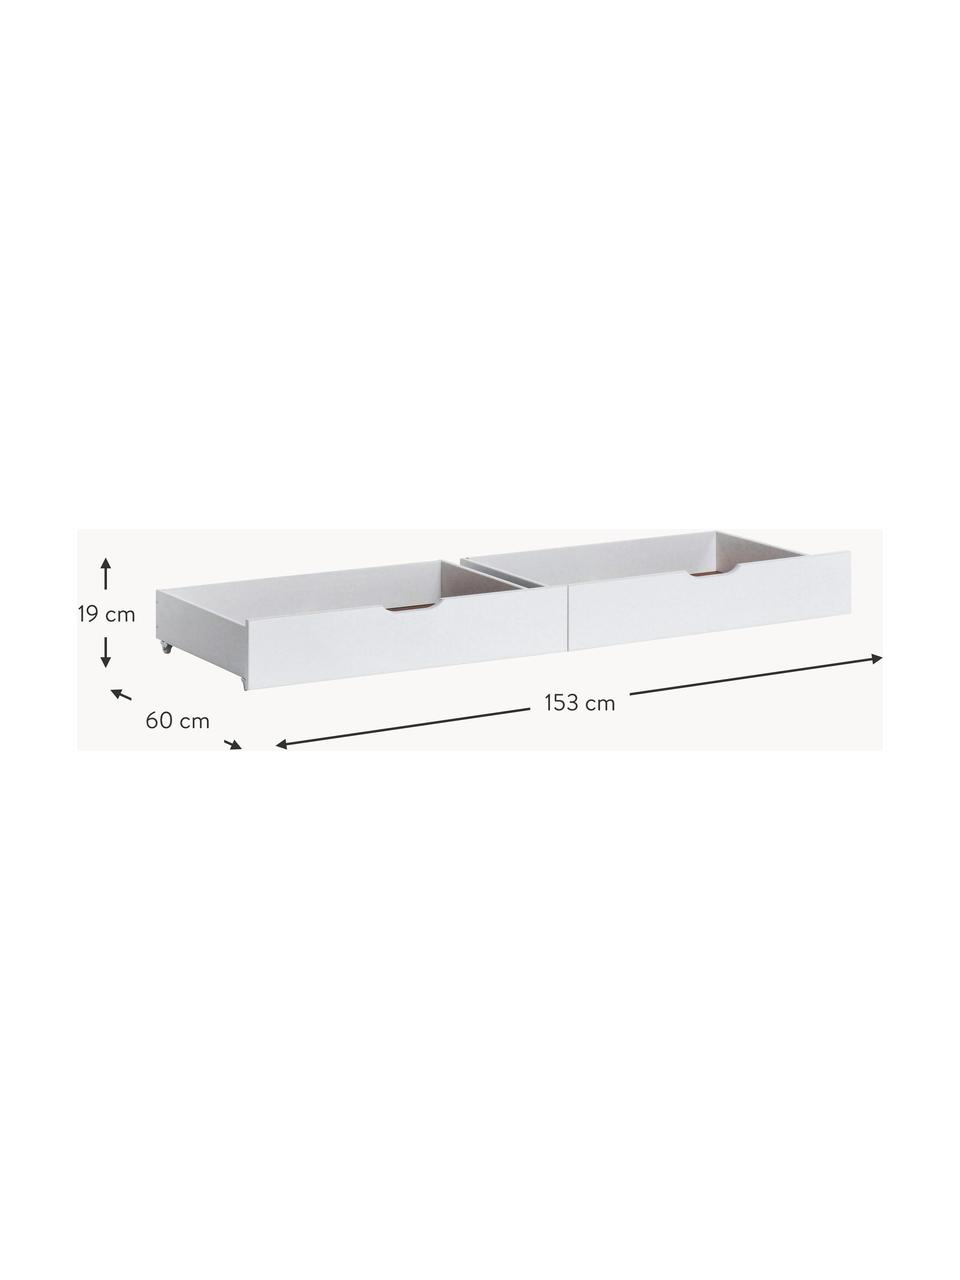 Bettschubladen Eco Comfort, 2 Stück, Mitteldichte Holzfaserplatte (MDF), FSC-zertifiziert, Holz, weiß lackiert, B 153 x T 60 cm